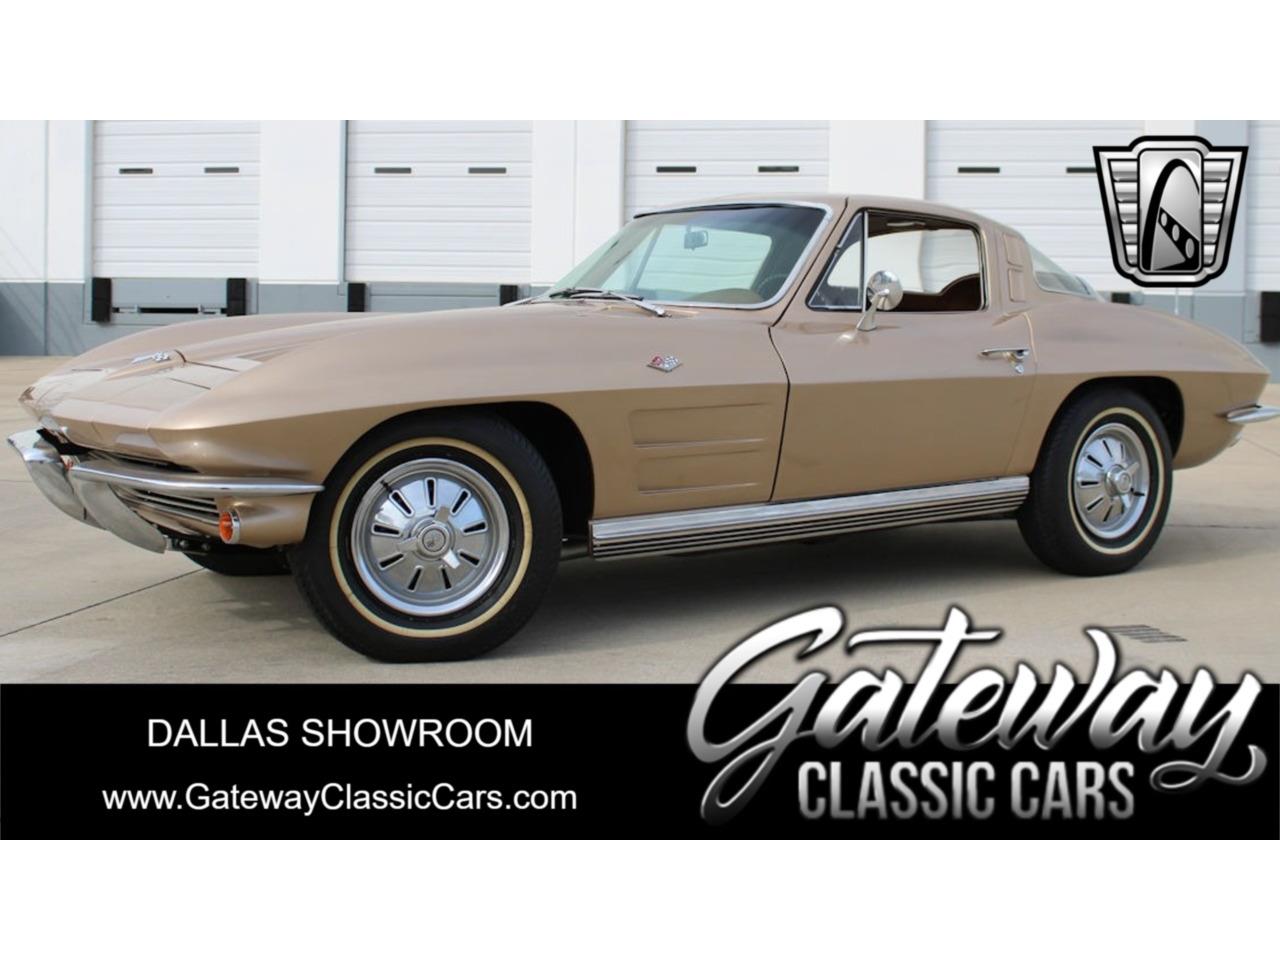 For Sale: 1964 Chevrolet Corvette in O'Fallon, Illinois for sale in O Fallon, IL